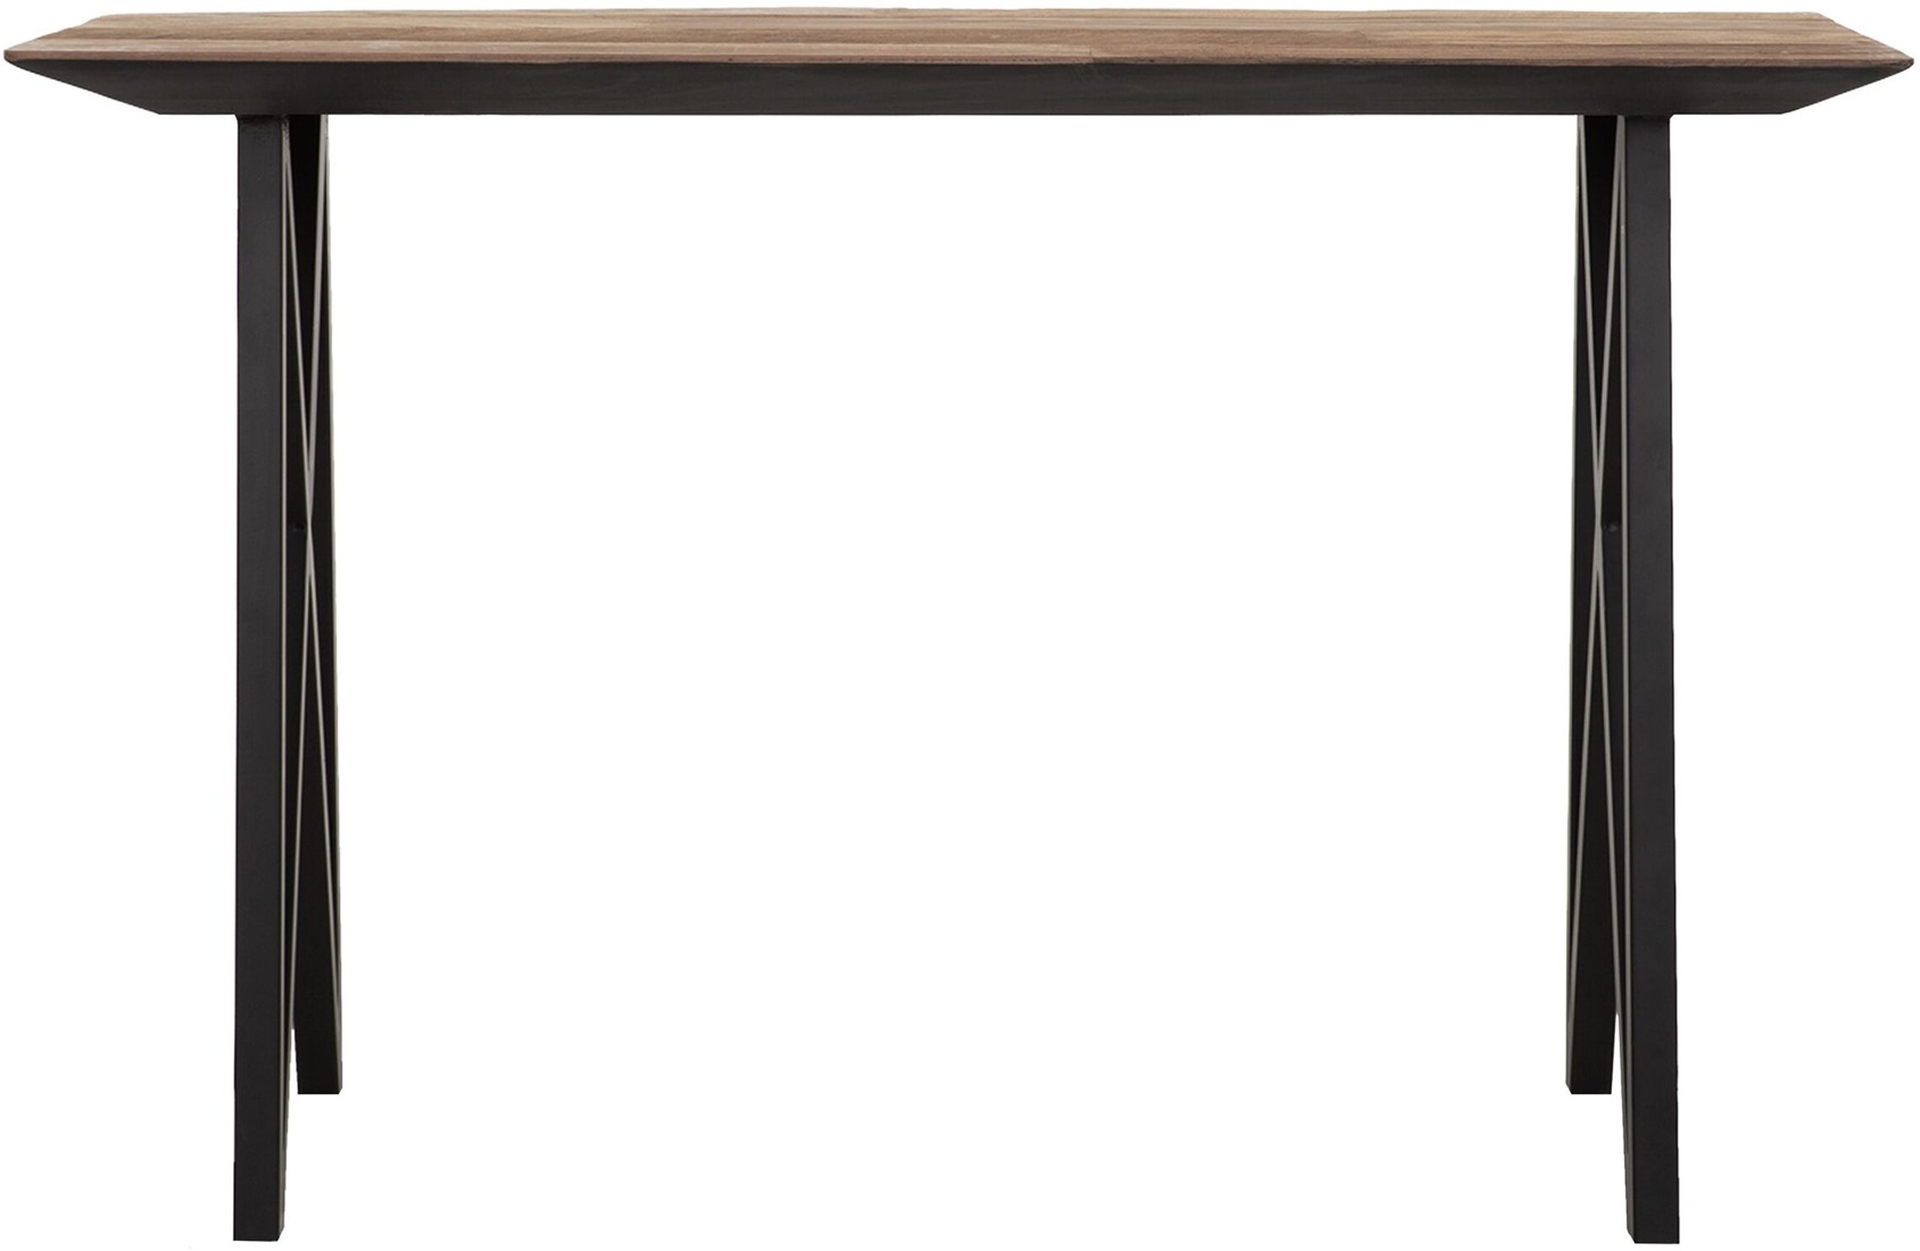 Der Schreibtisch Highlight wurde aus Teakholz gefertigt, welches einen natürlichen Farbton besitzt. Das Gestell ist aus Metall uns ist Schwarz. Der Tisch überzeugt mit seinem massivem aber auch modernen Design. Der Schreibtisch besitzt eine Länge von 120 